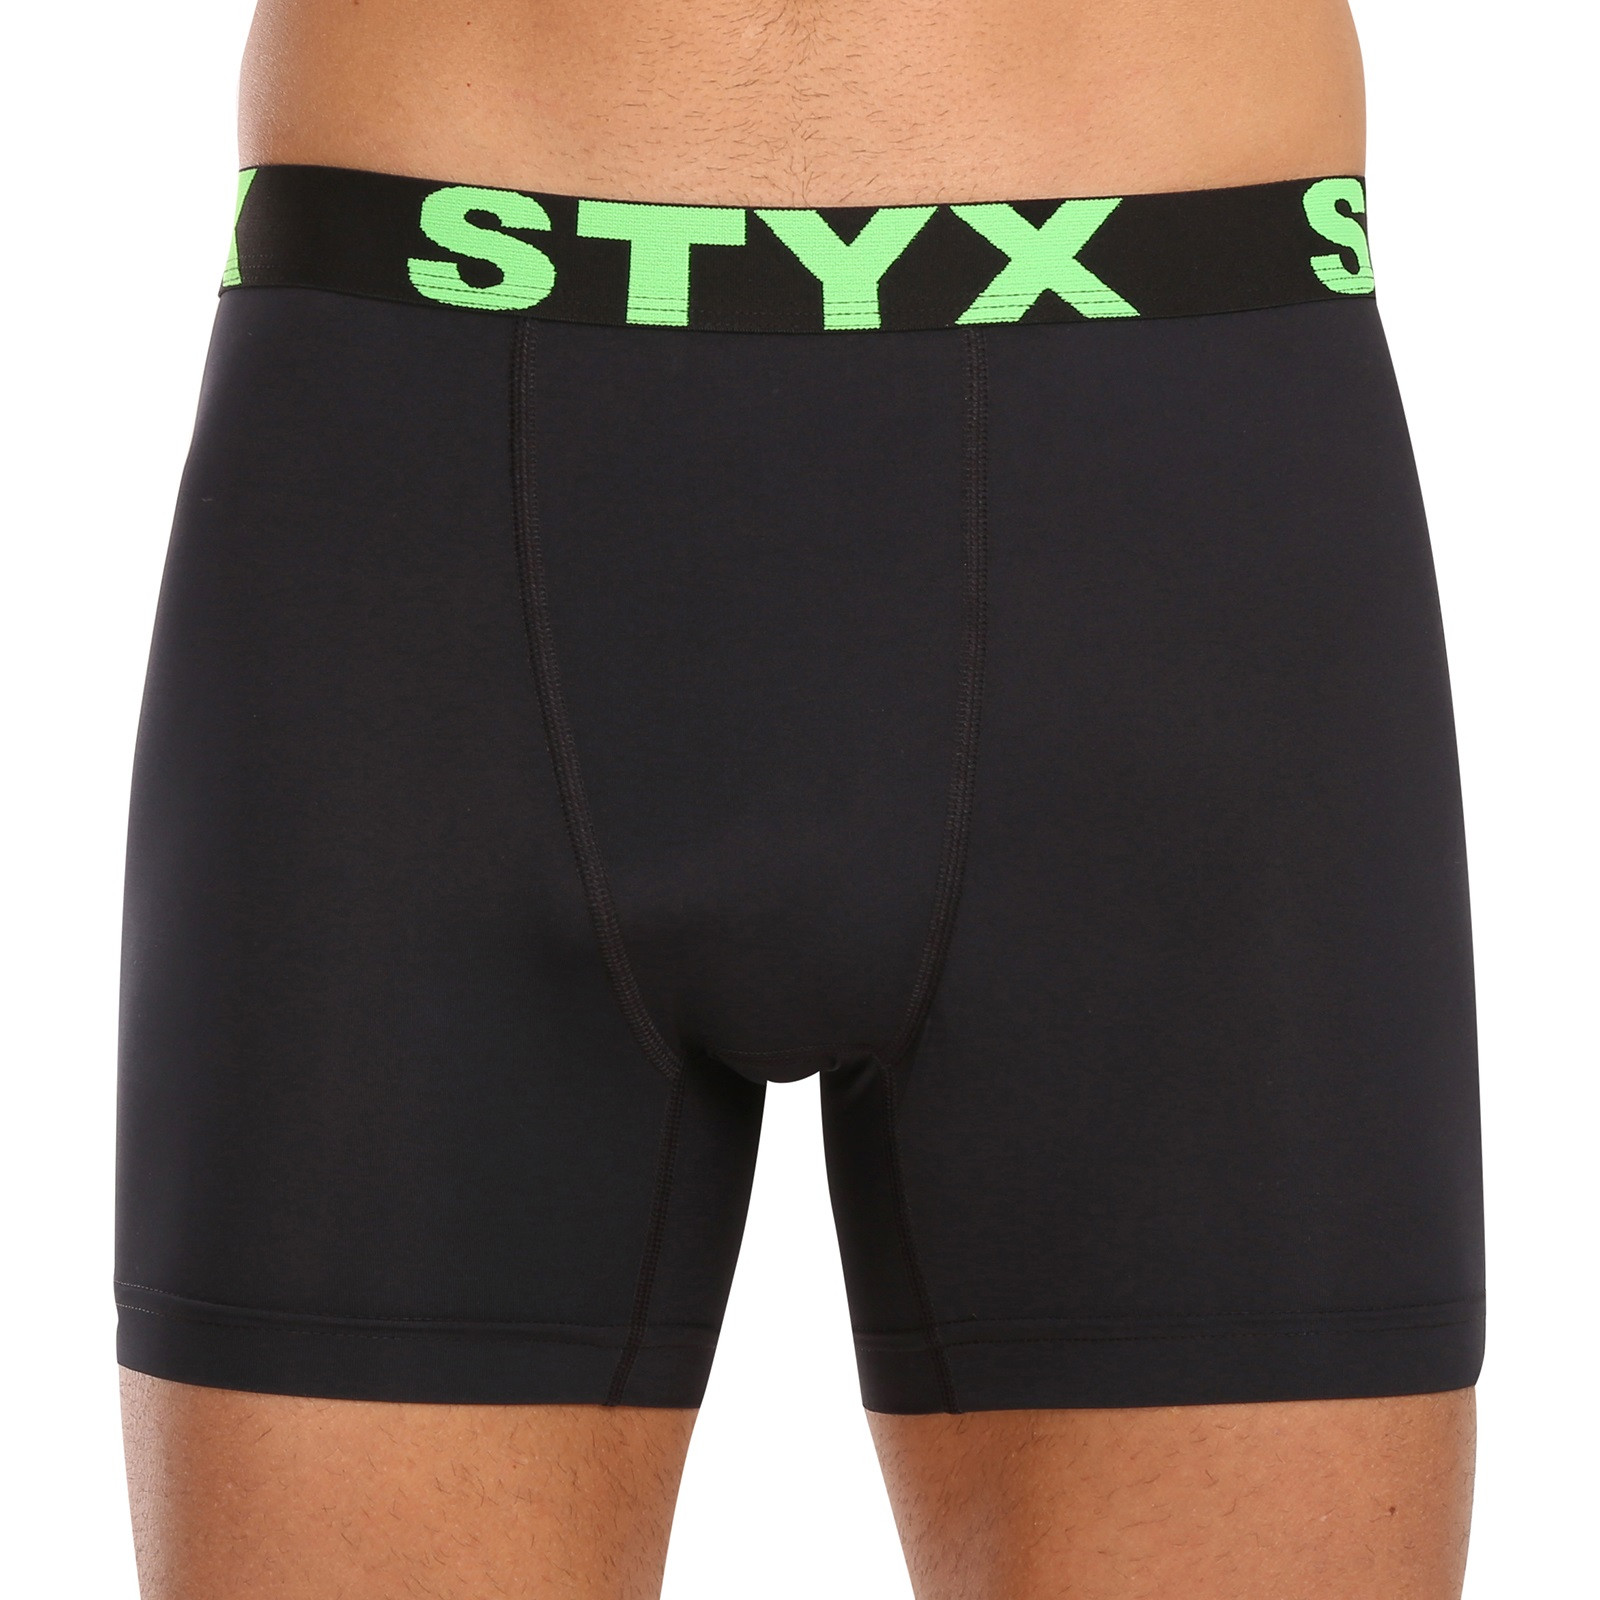 E-shop Pánské funkční boxerky Styx černé